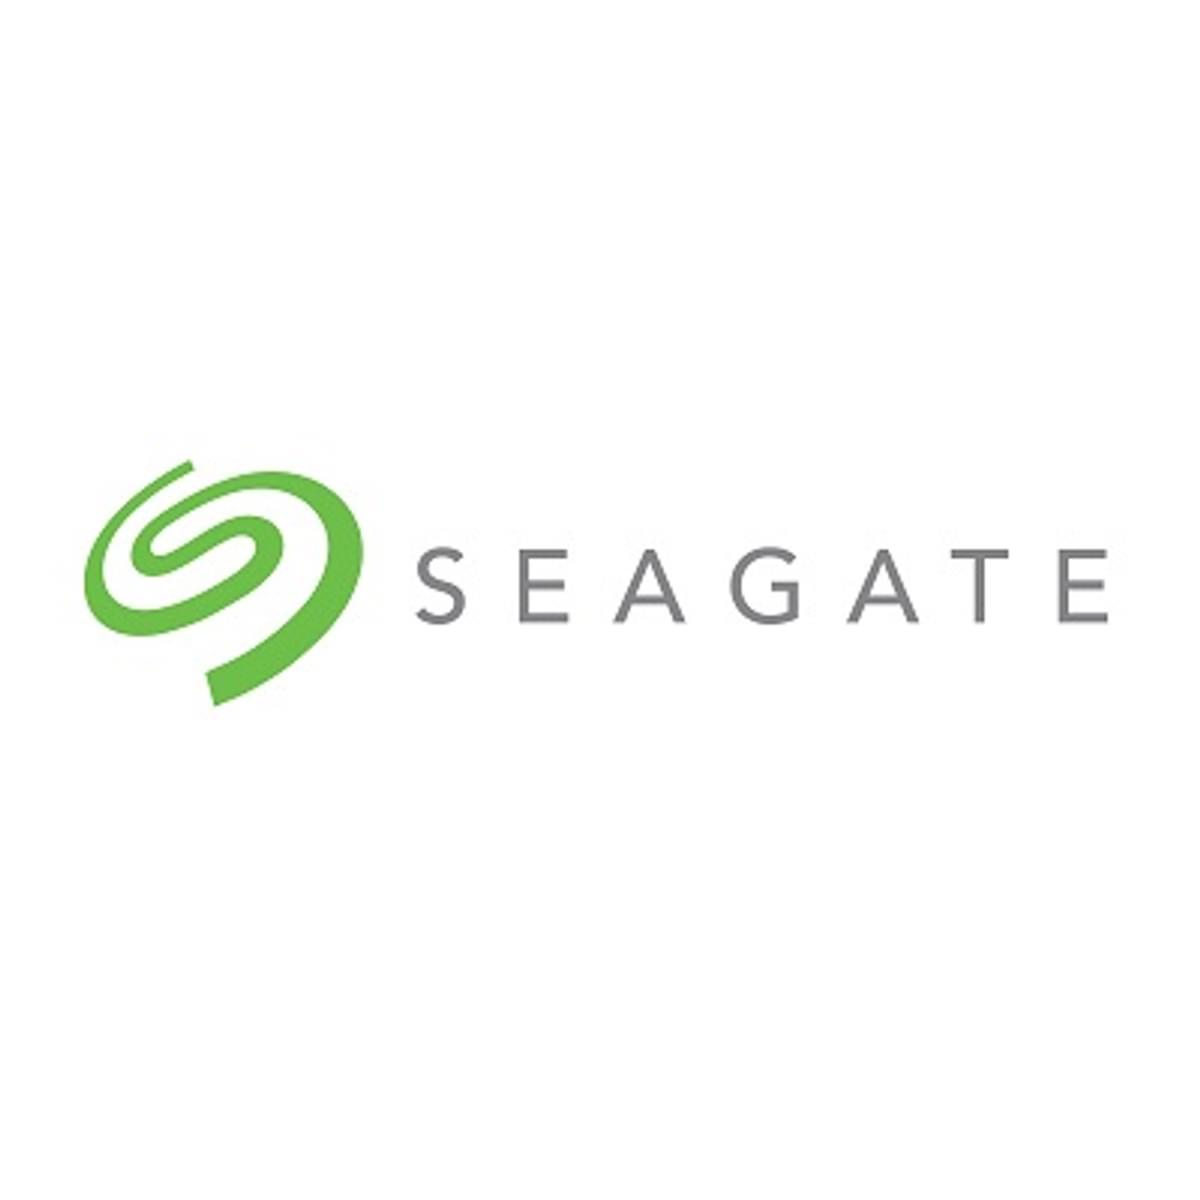 Seagate ziet omzet en winst licht zakken image